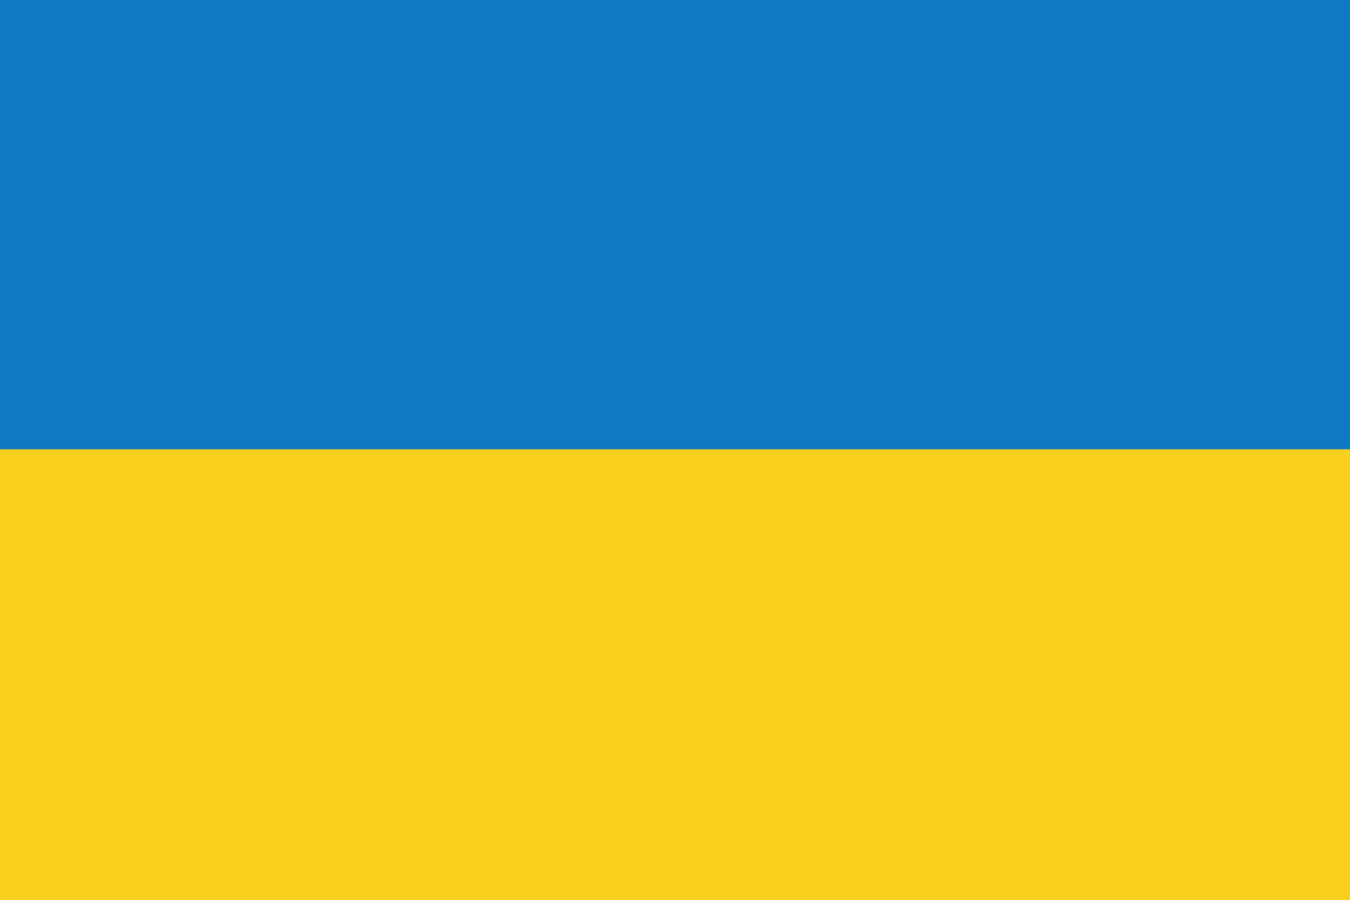 drapeau, Ukraine, République démocratique, démocratie, l'Europe, Jaune, bleu, couleurs, conception, symbole